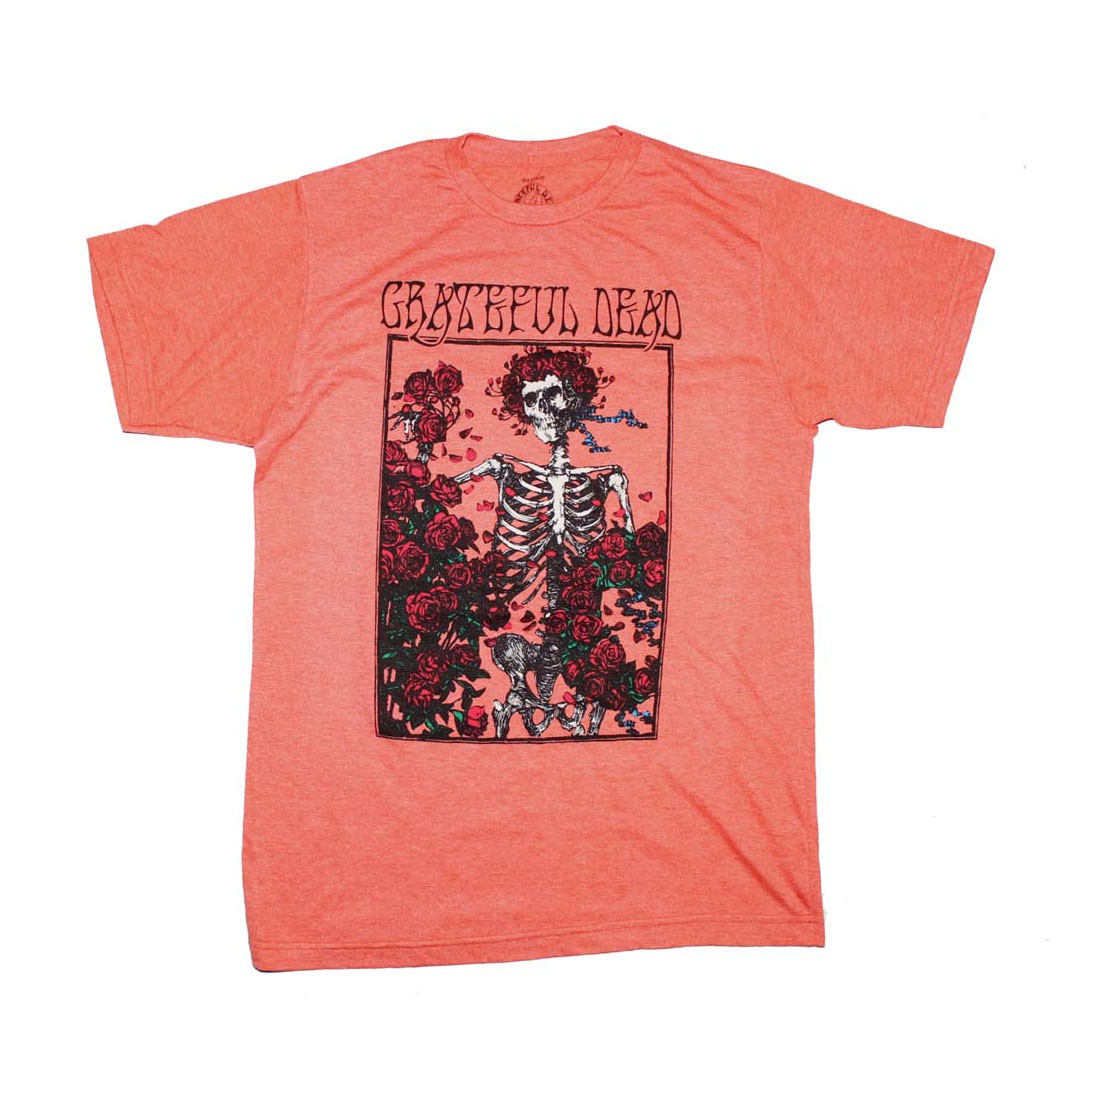 Grateful Dead Bertha T-Shirt